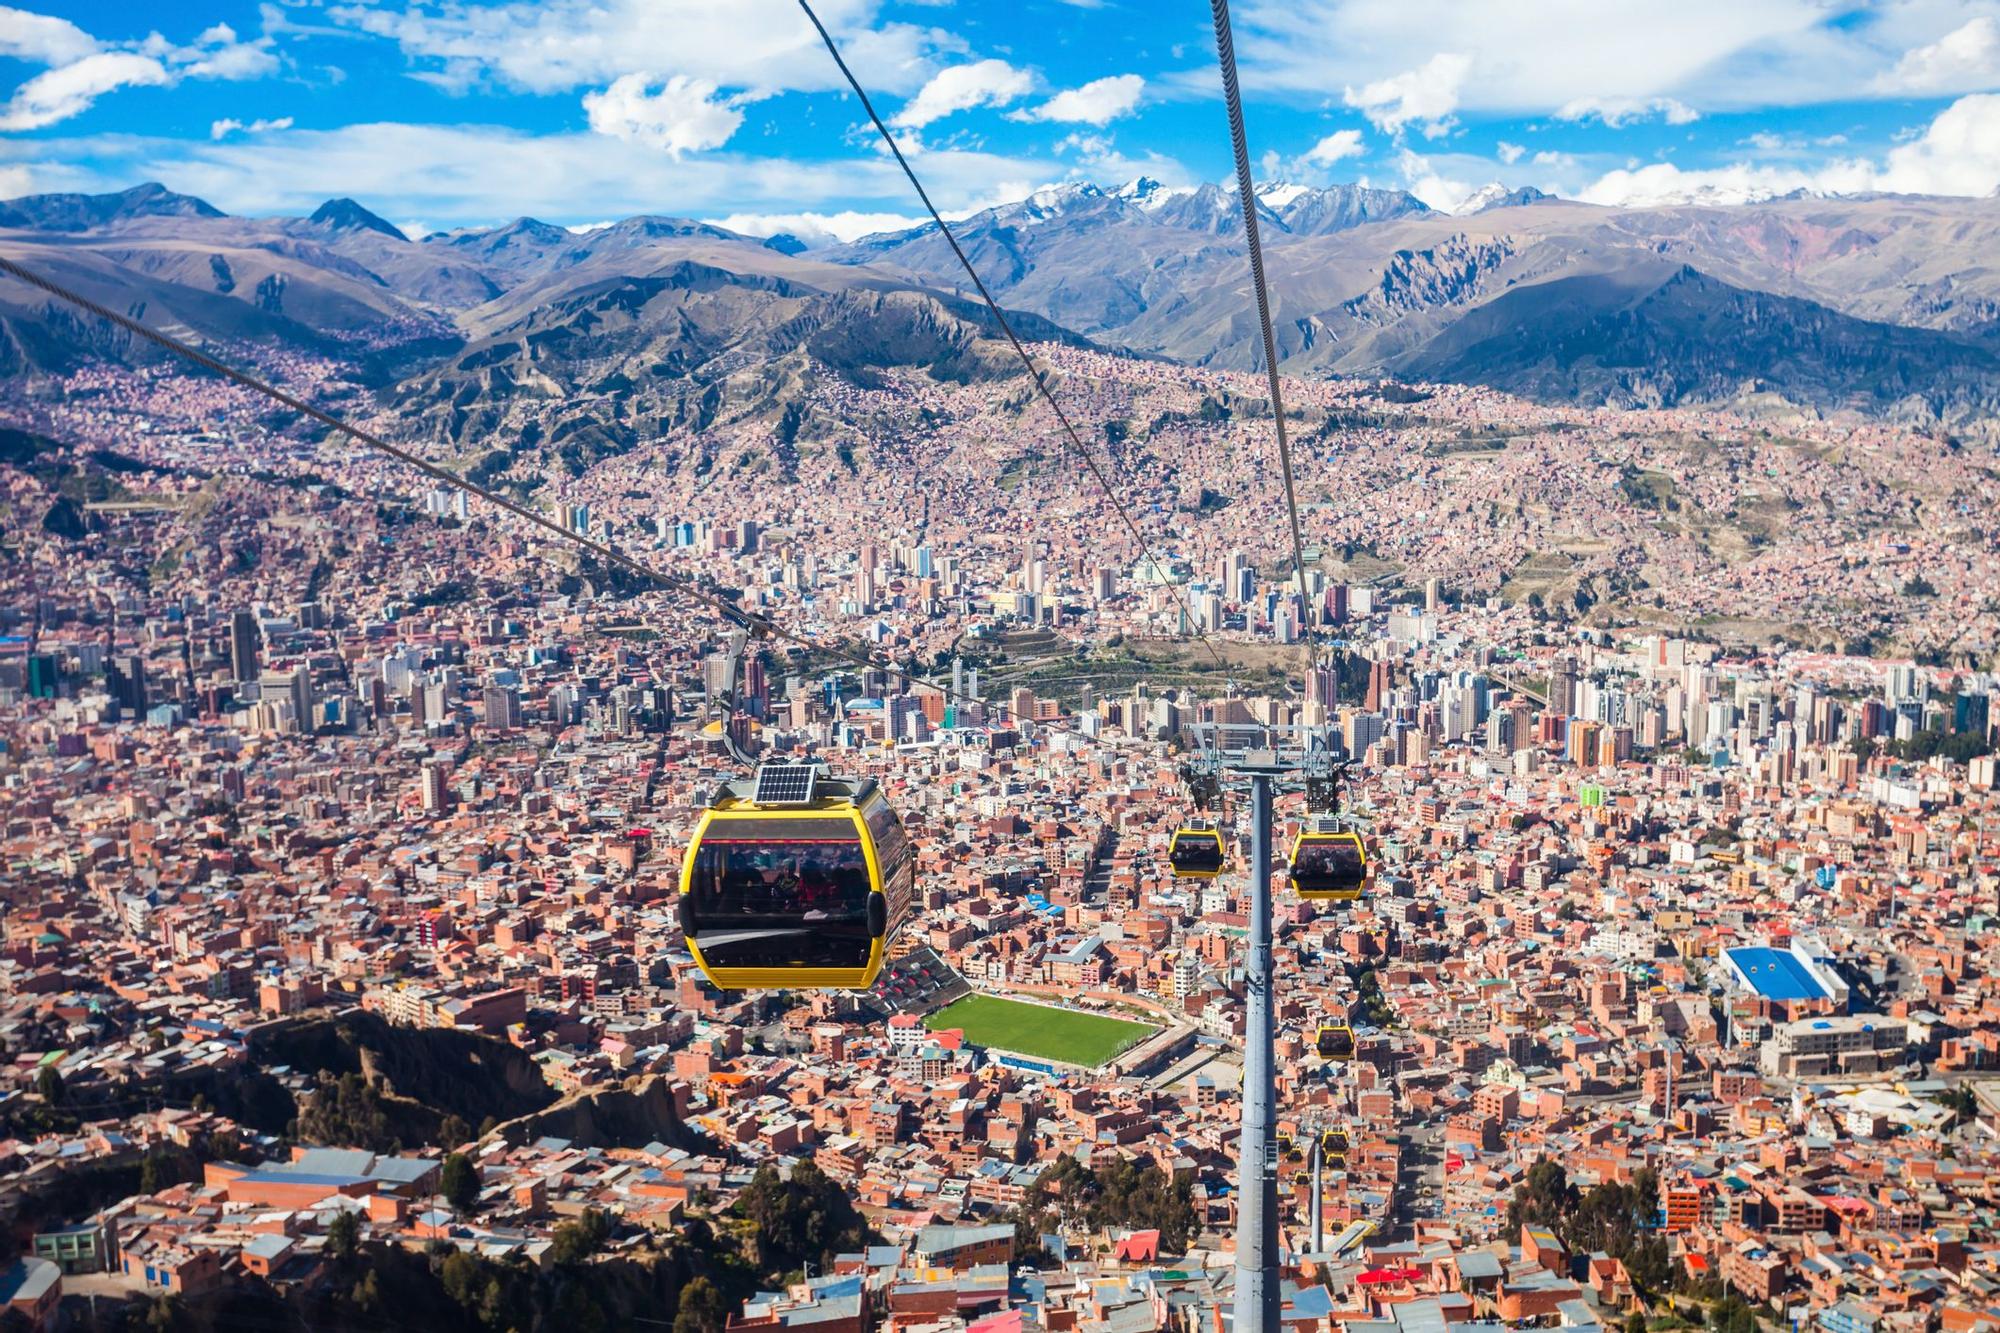 Teleférico de La Paz, Bolivia